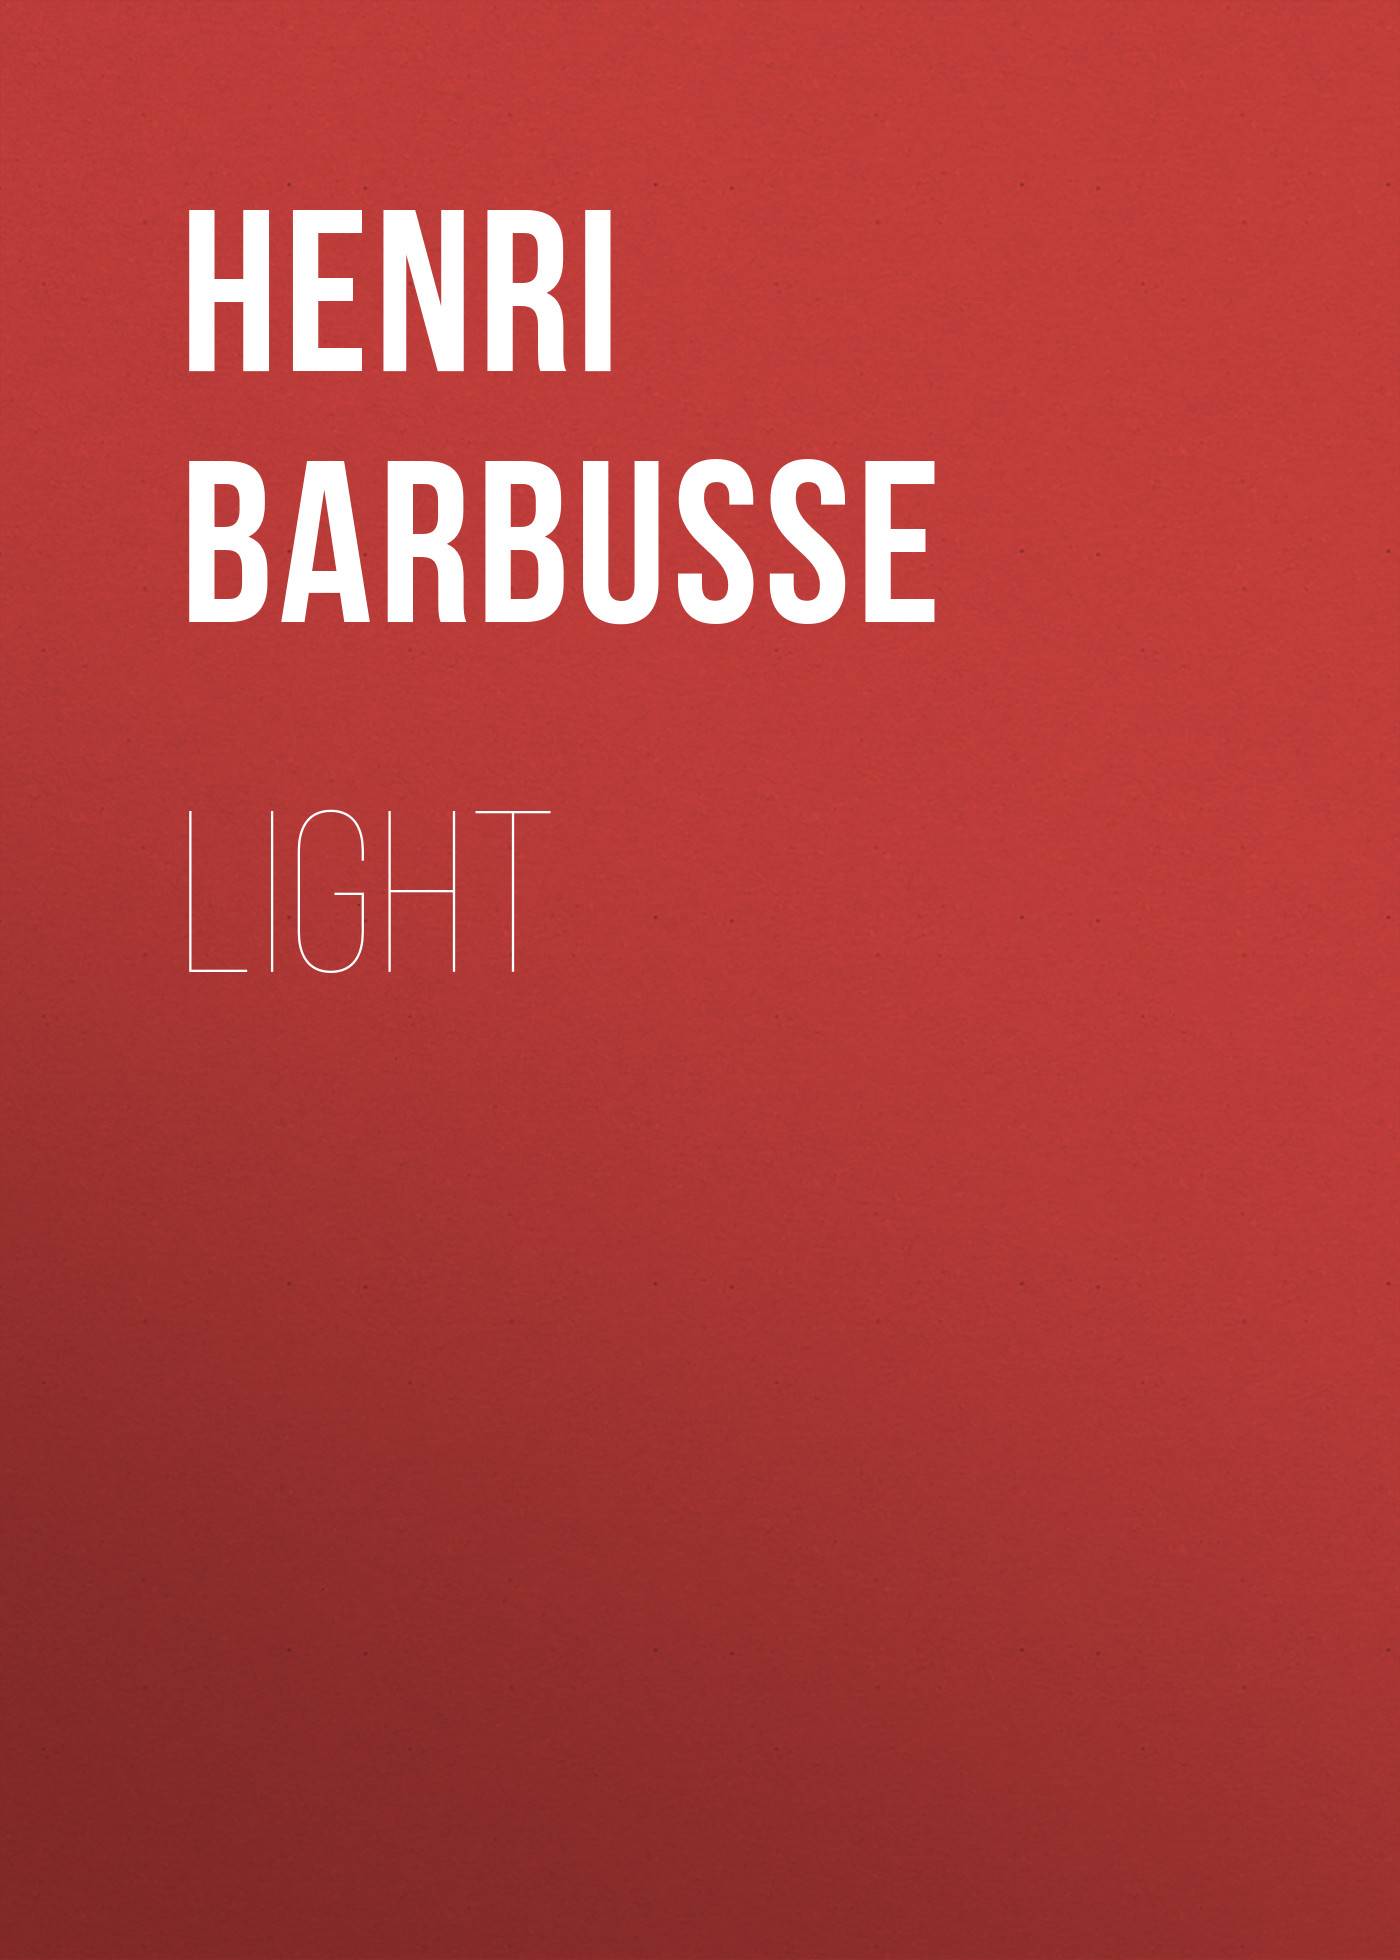 Книга Light из серии , созданная Henri Barbusse, может относится к жанру Зарубежная старинная литература, Зарубежная классика, Зарубежные любовные романы. Стоимость электронной книги Light с идентификатором 36365846 составляет 0 руб.